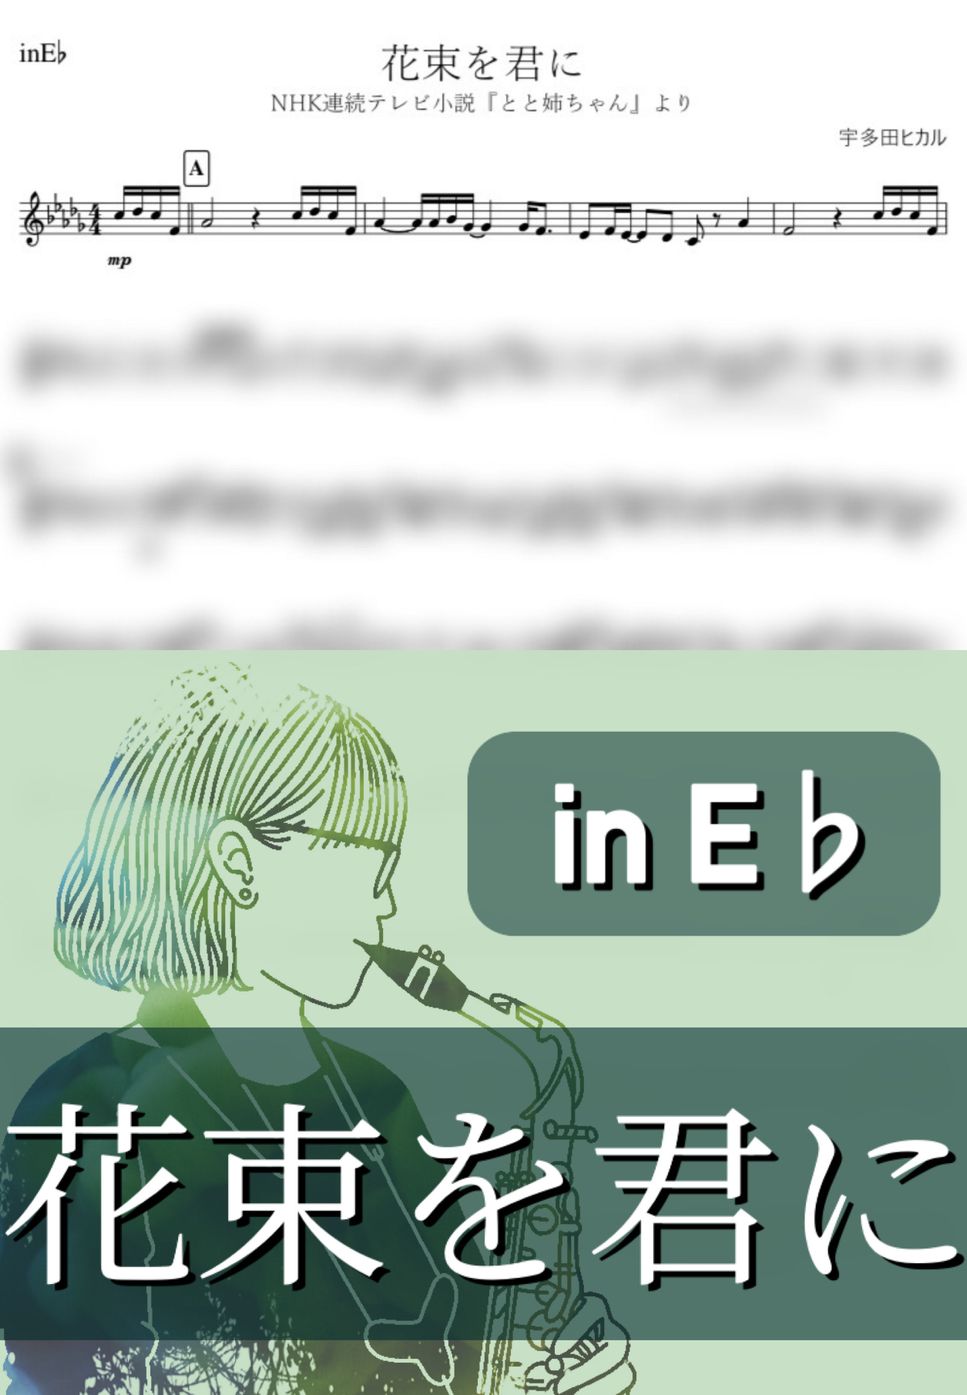 宇多田ヒカル - 花束を君に (E♭) by kanamusic